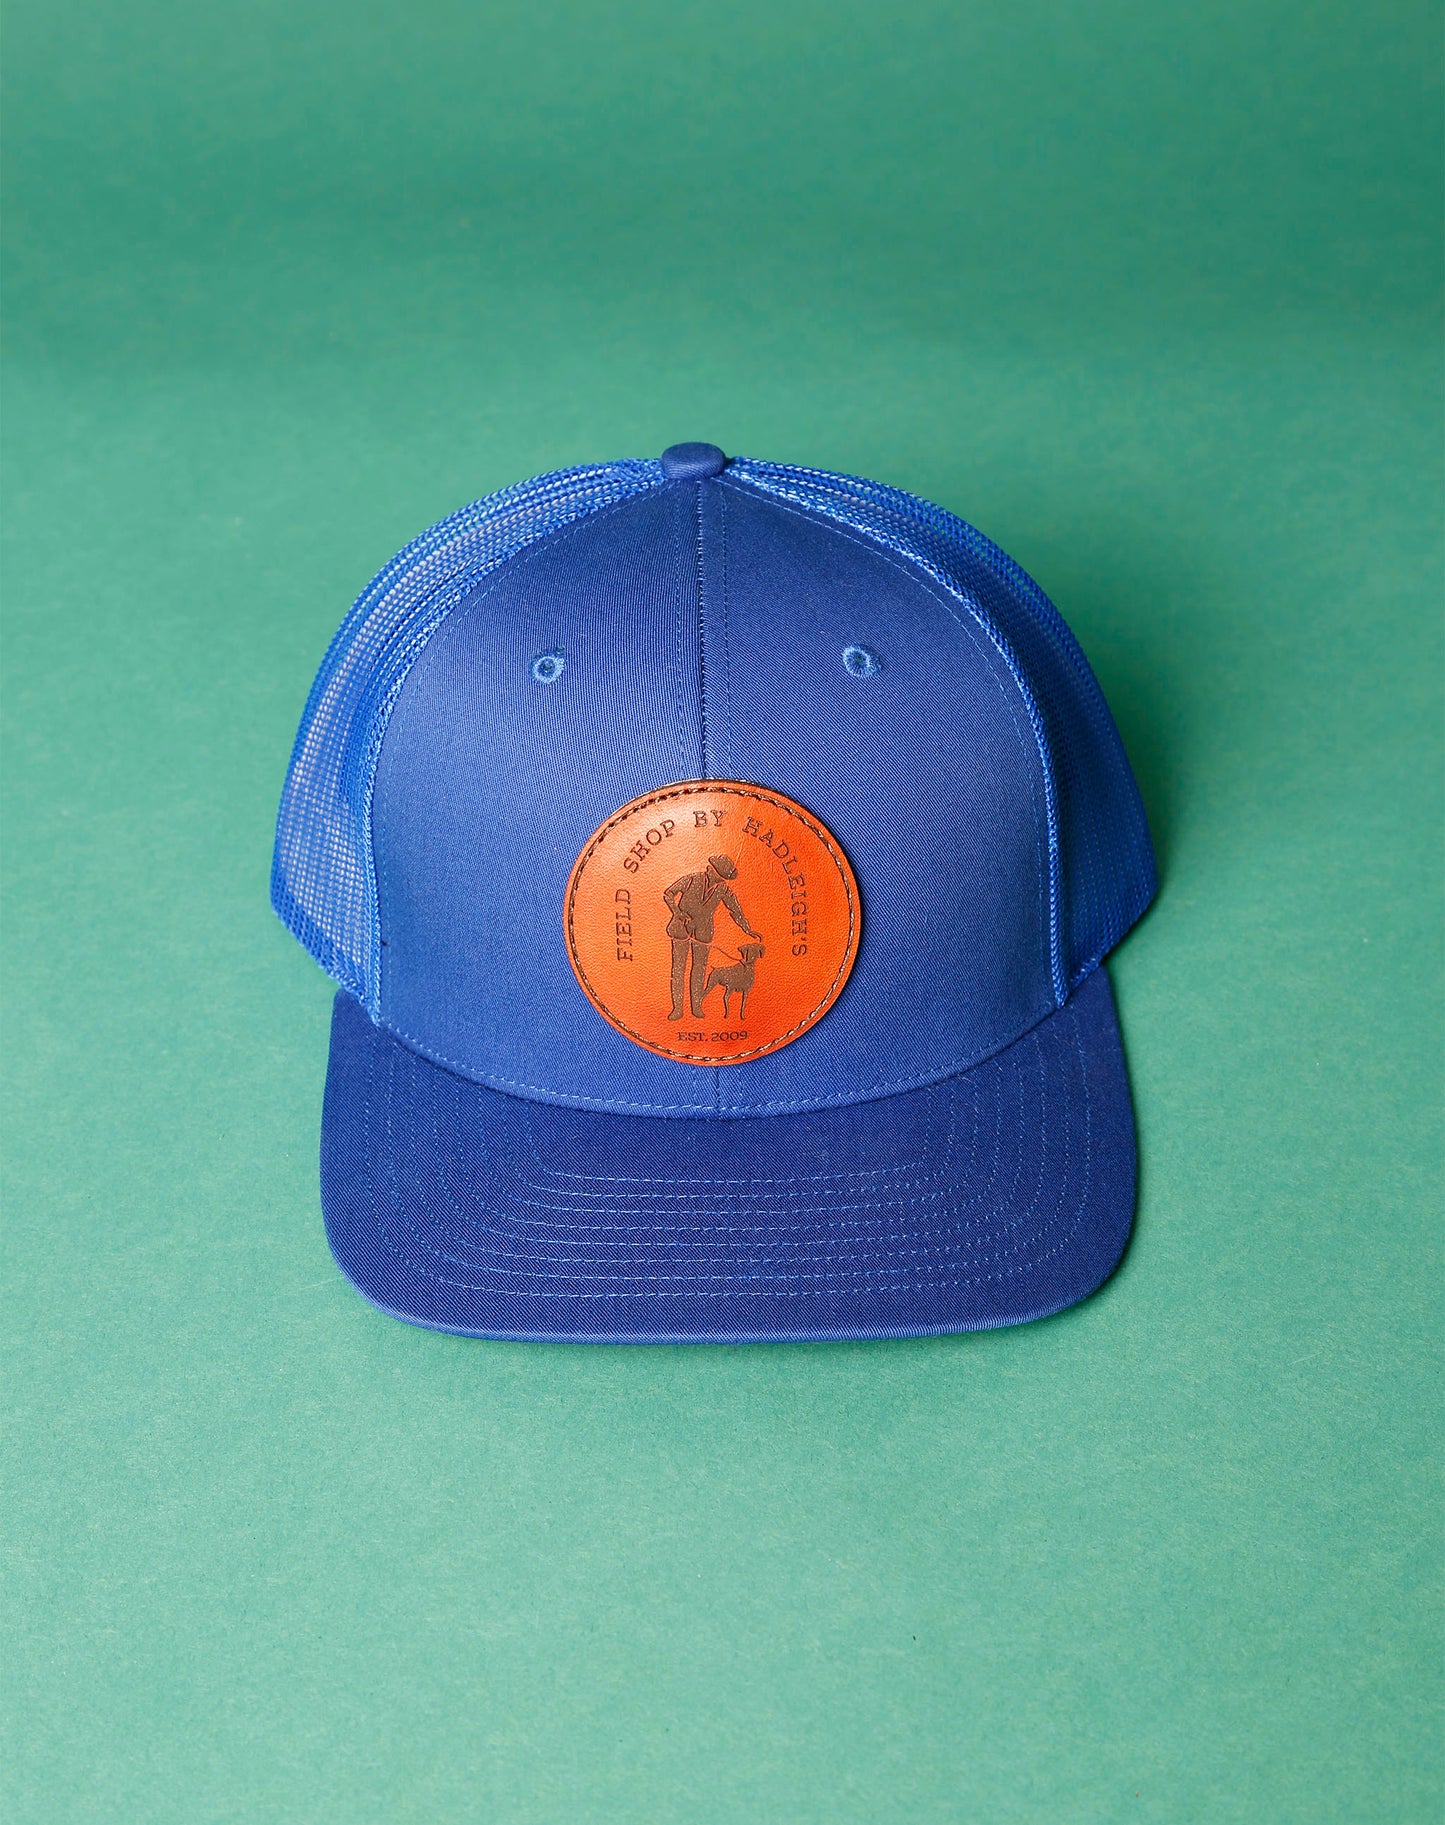 Field Shop Sporting Cap in Cobalt